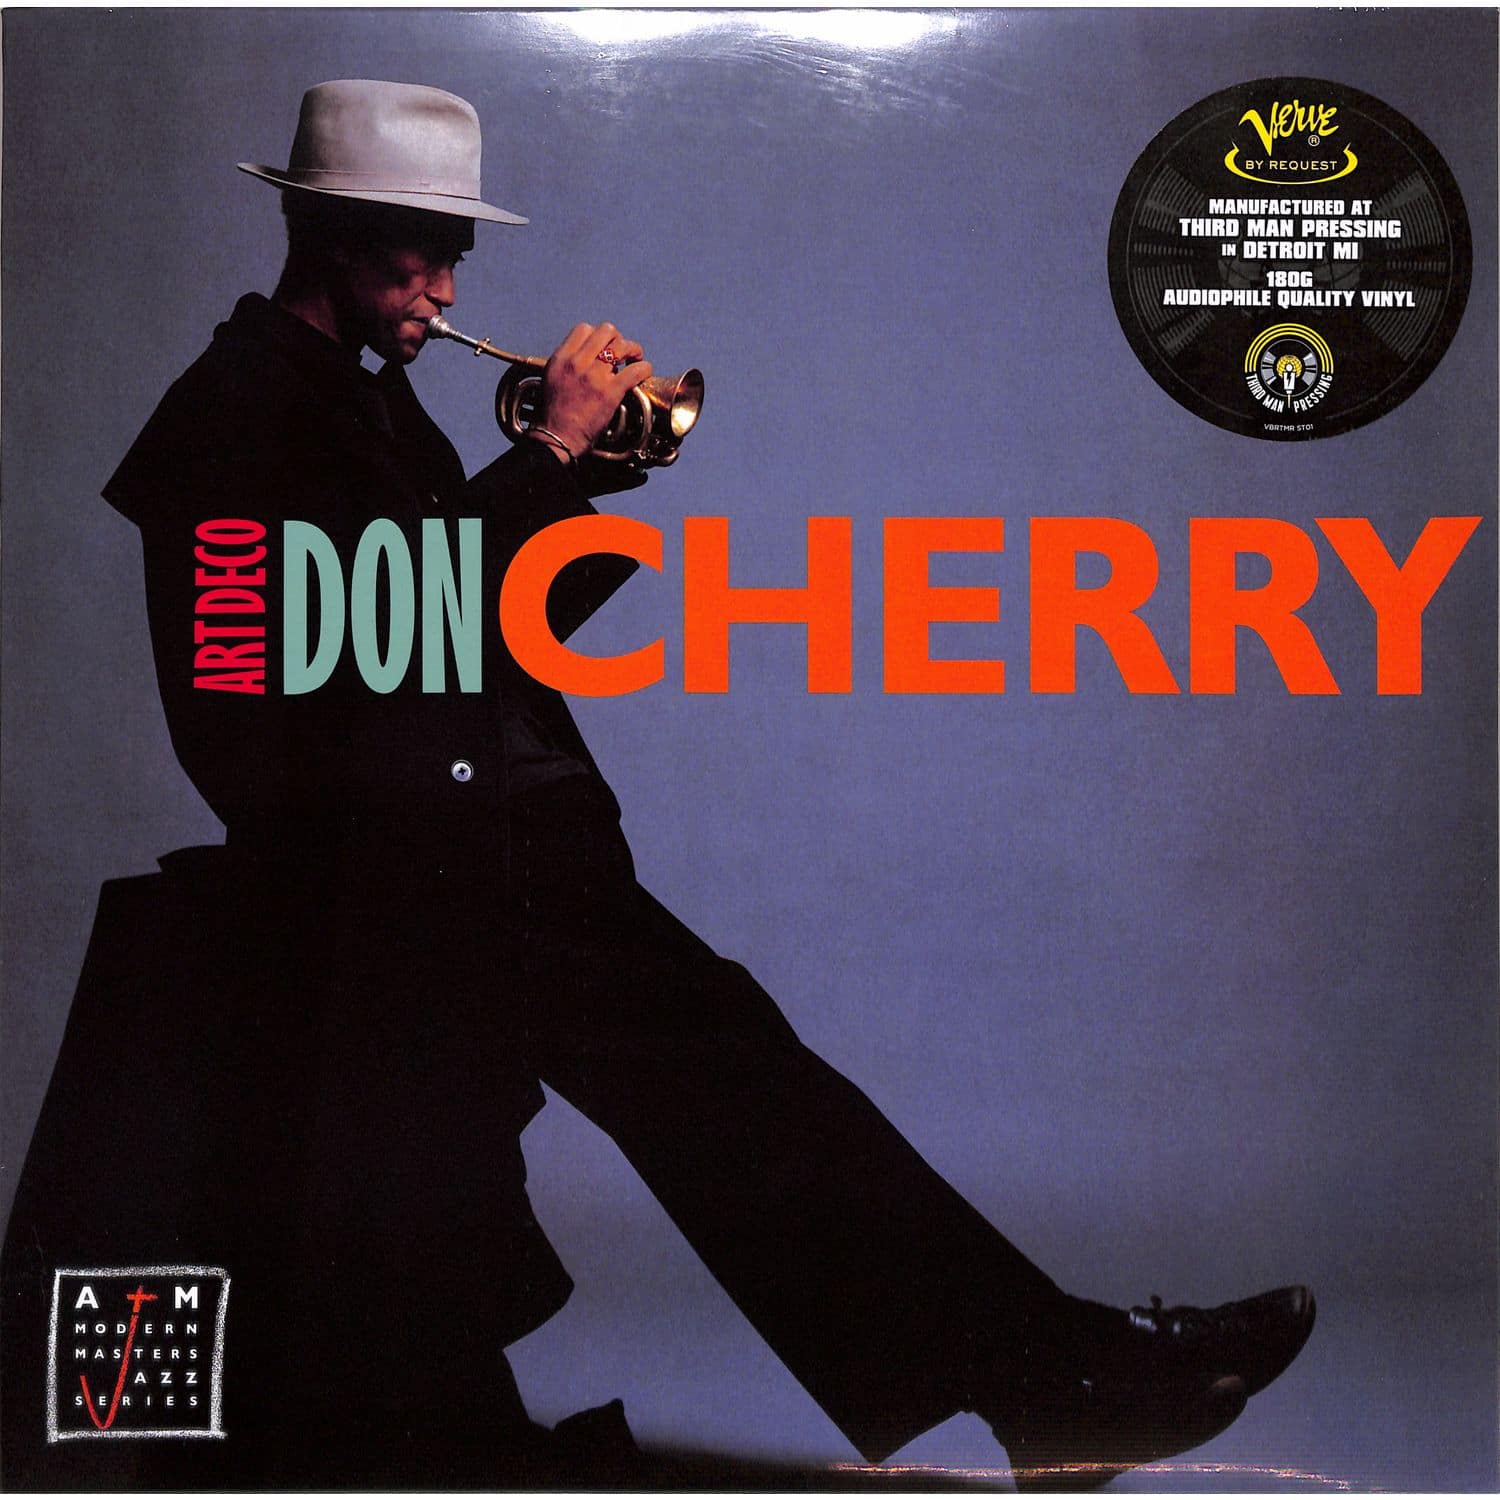 Don Cherry - ART DECO 